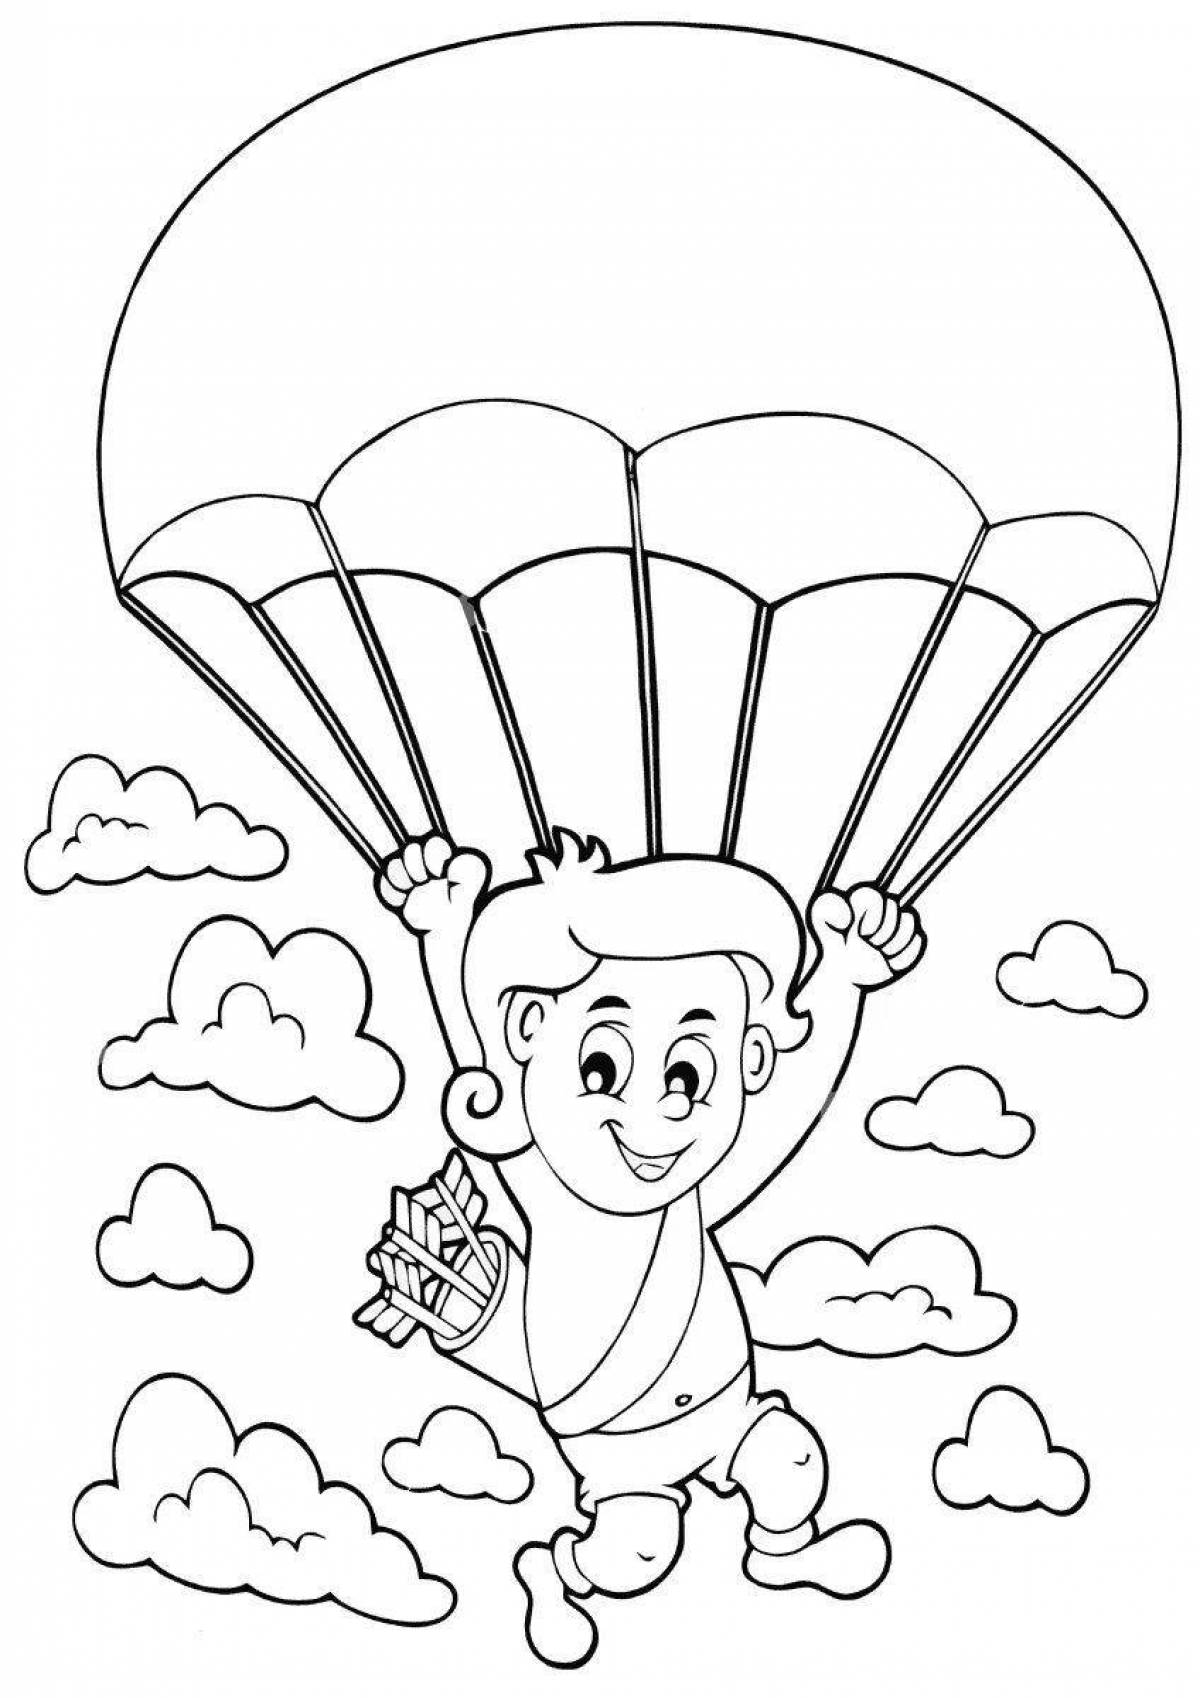 Яркая раскраска военного парашютиста для детей